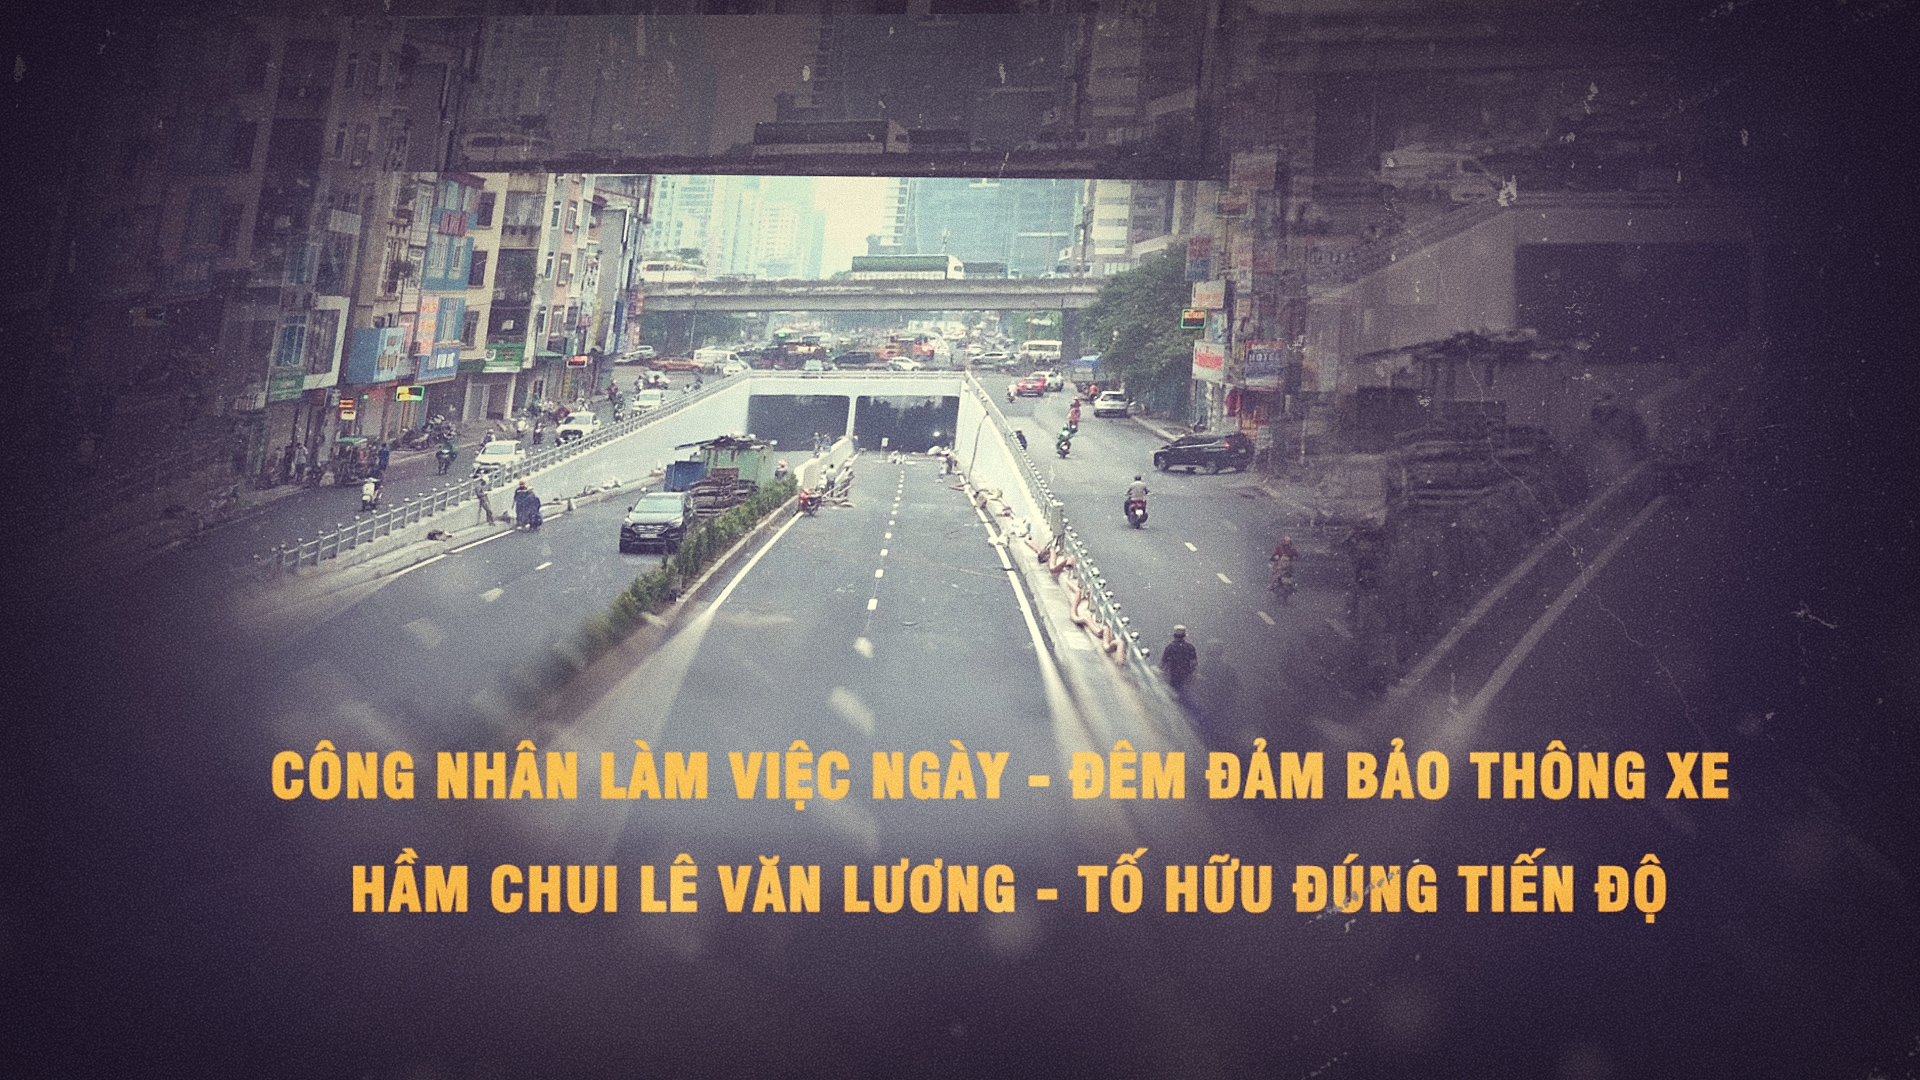 Công nhân làm việc ngày đêm để thông xe hầm chui Lê Văn Lương - Tố Hữu đúng tiến độ